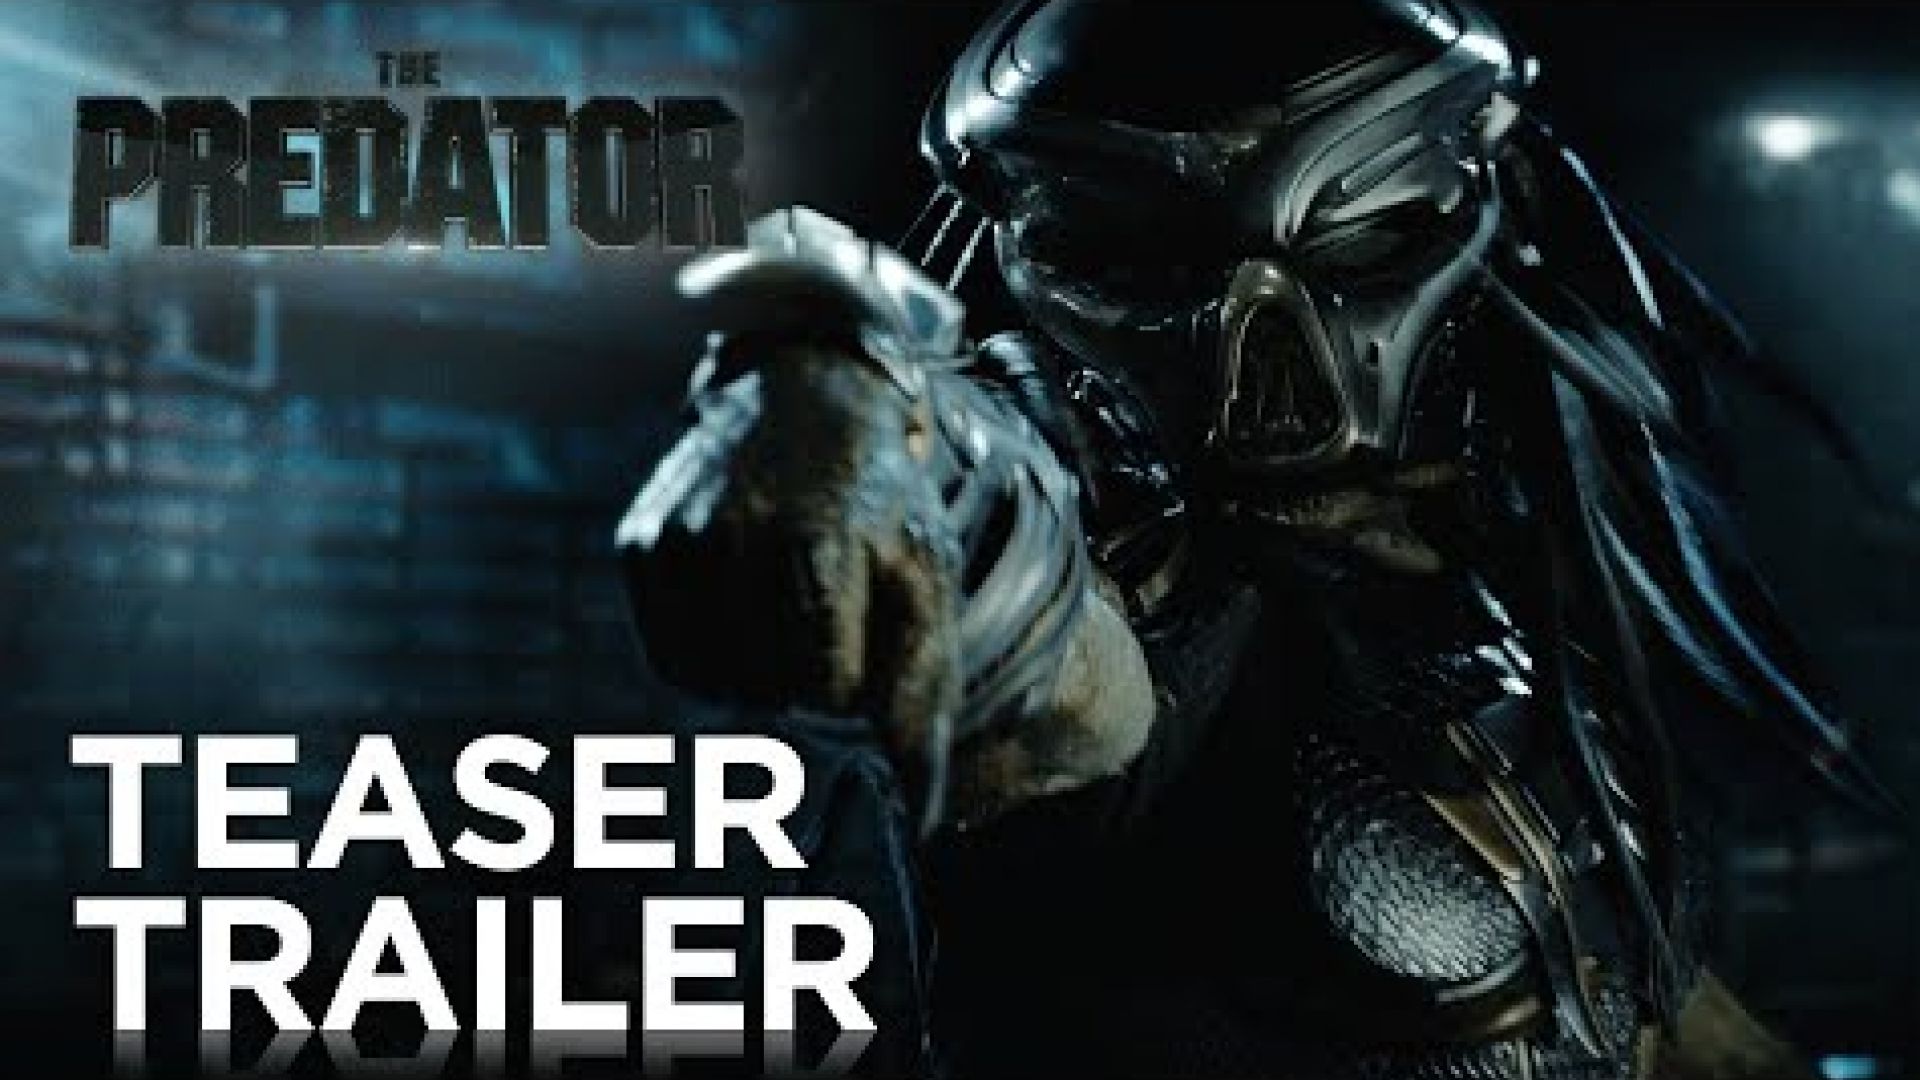 'The Predator' Teaser Trailer